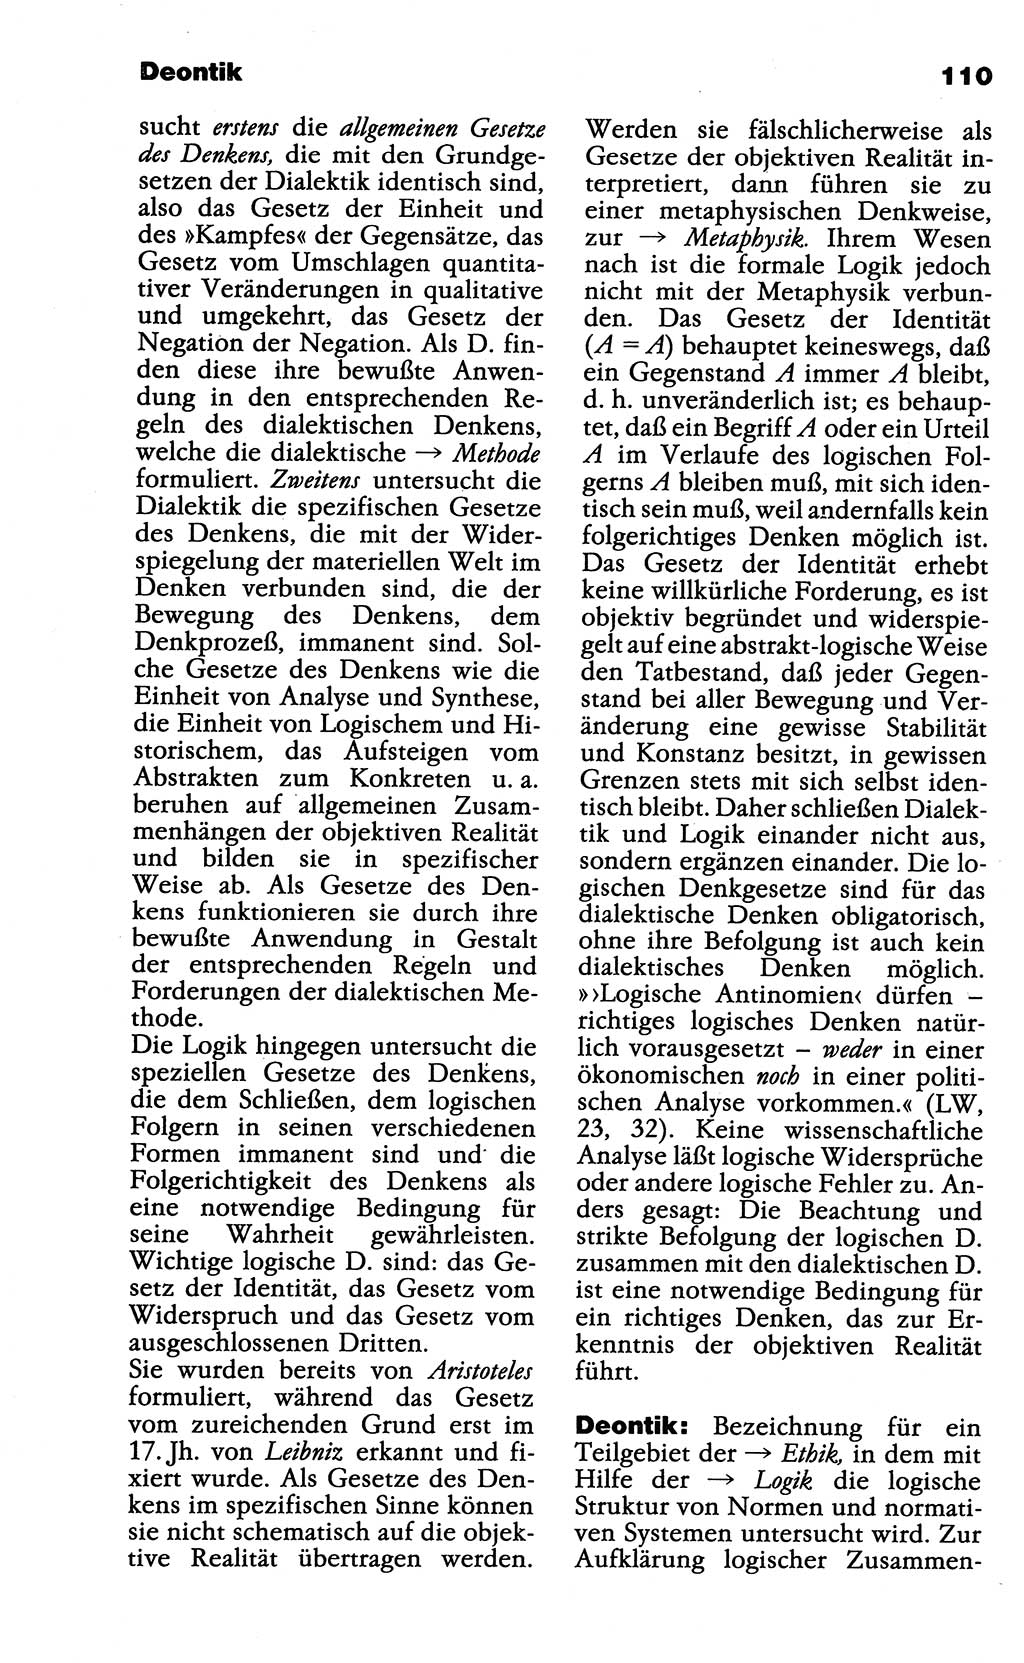 Wörterbuch der marxistisch-leninistischen Philosophie [Deutsche Demokratische Republik (DDR)] 1985, Seite 110 (Wb. ML Phil. DDR 1985, S. 110)